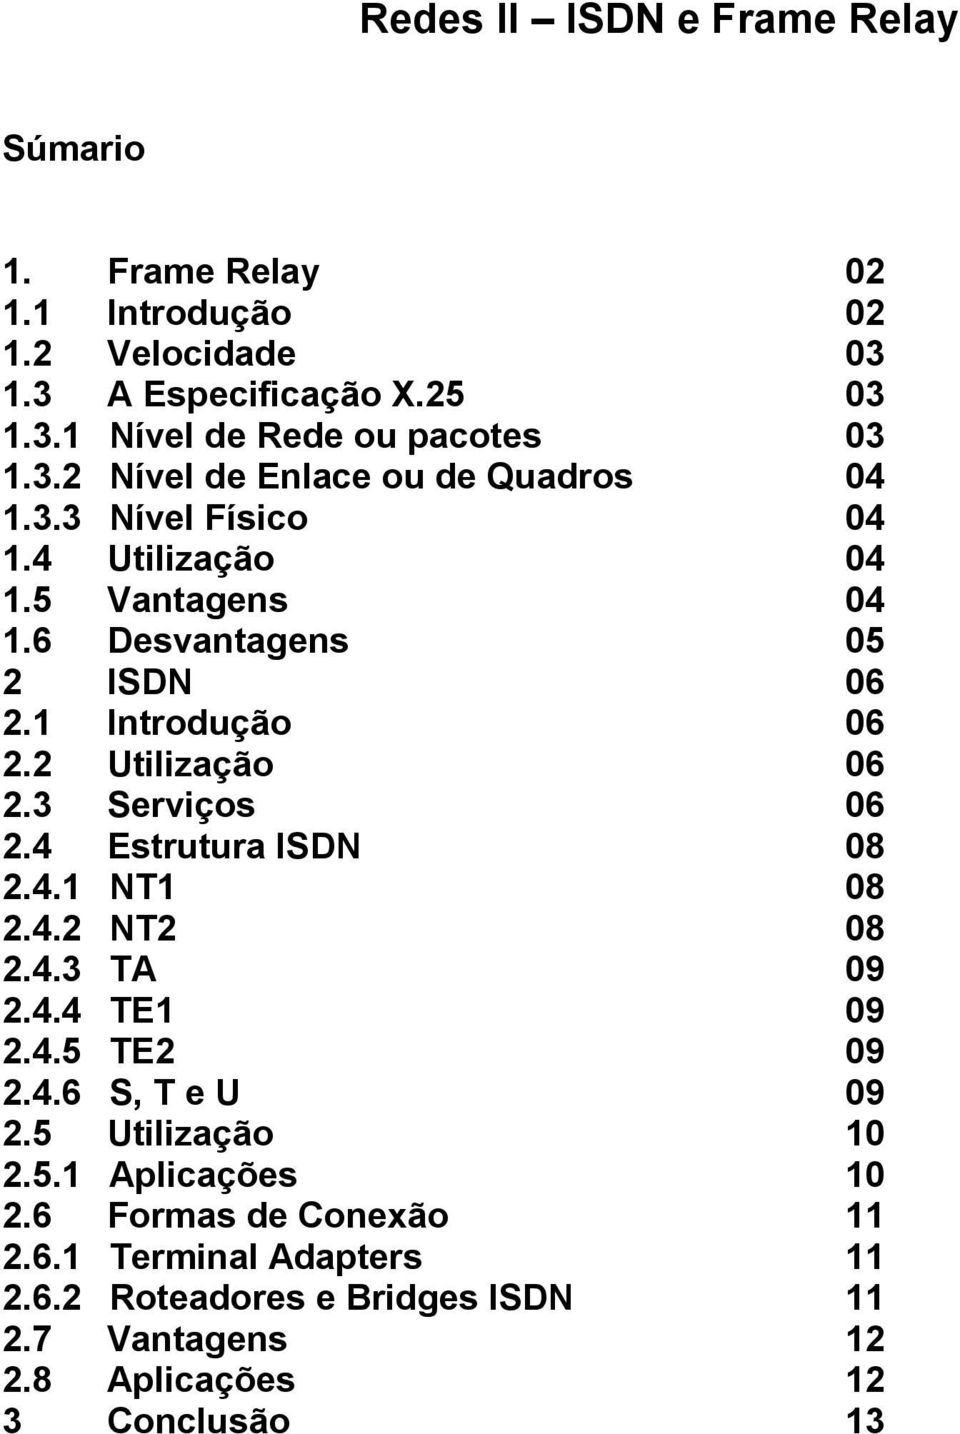 2 Utilização 06 2.3 Serviços 06 2.4 Estrutura ISDN 08 2.4.1 NT1 08 2.4.2 NT2 08 2.4.3 TA 09 2.4.4 TE1 09 2.4.5 TE2 09 2.4.6 S, T e U 09 2.